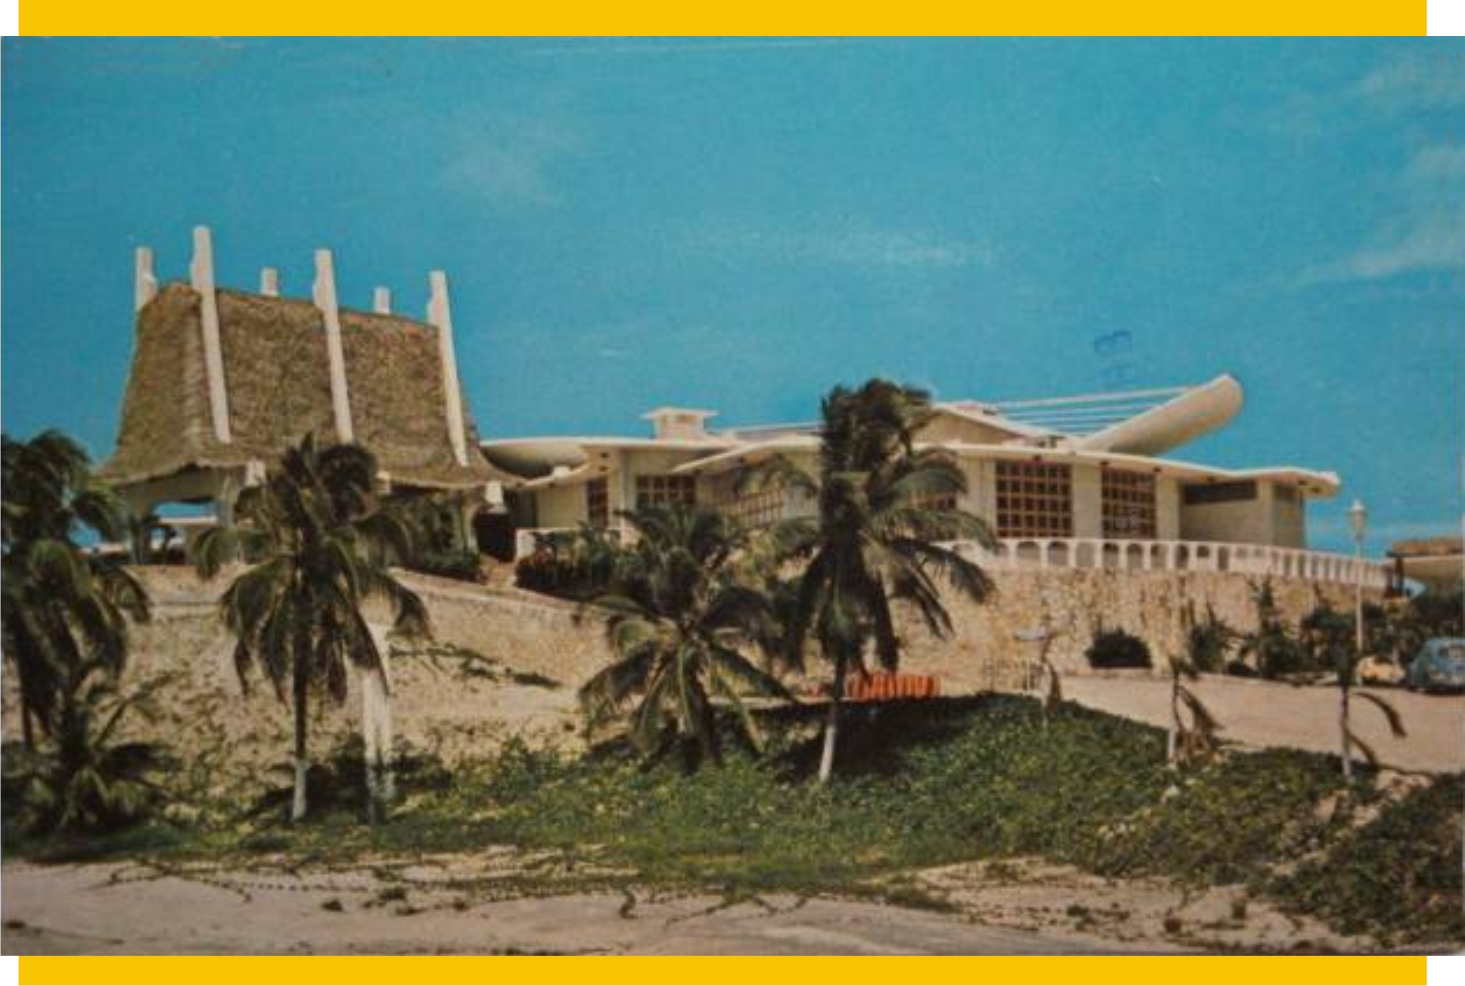 Fachada del hotel Garza Blanca a fines de los aÃ±os 1970s, vista desde ...